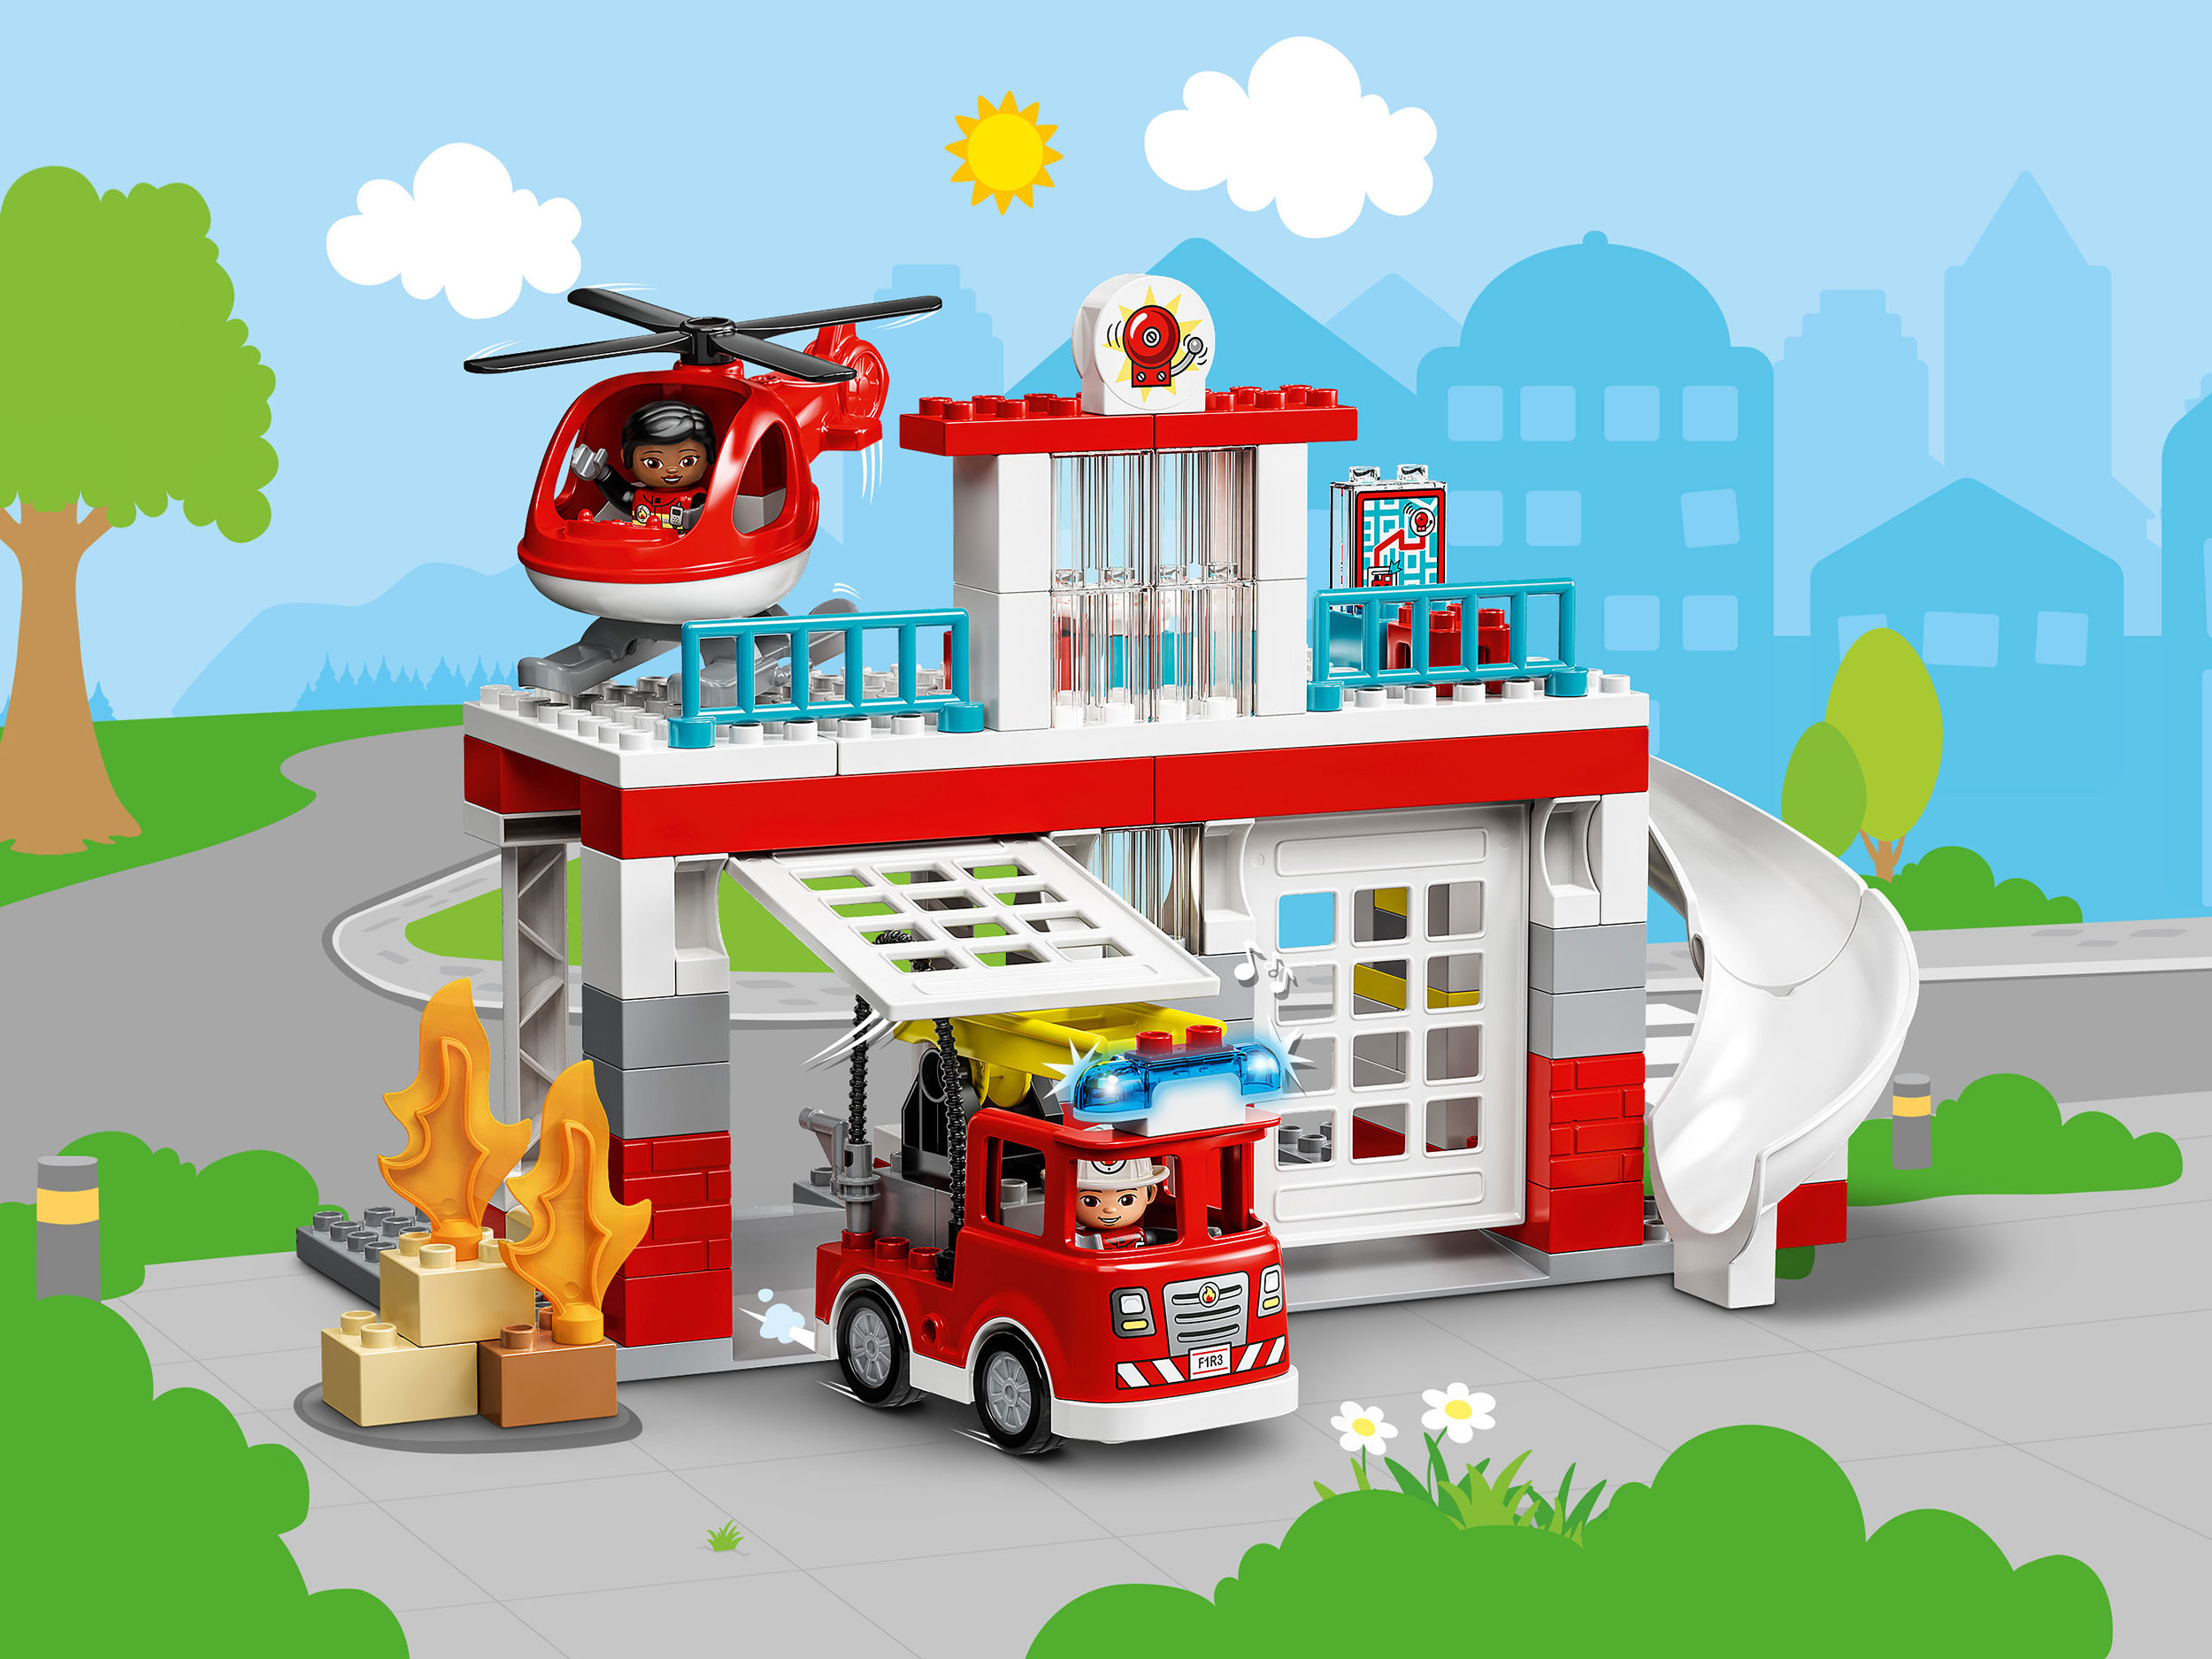 Lego Duplo 10970 Пожарная часть и вертолёт